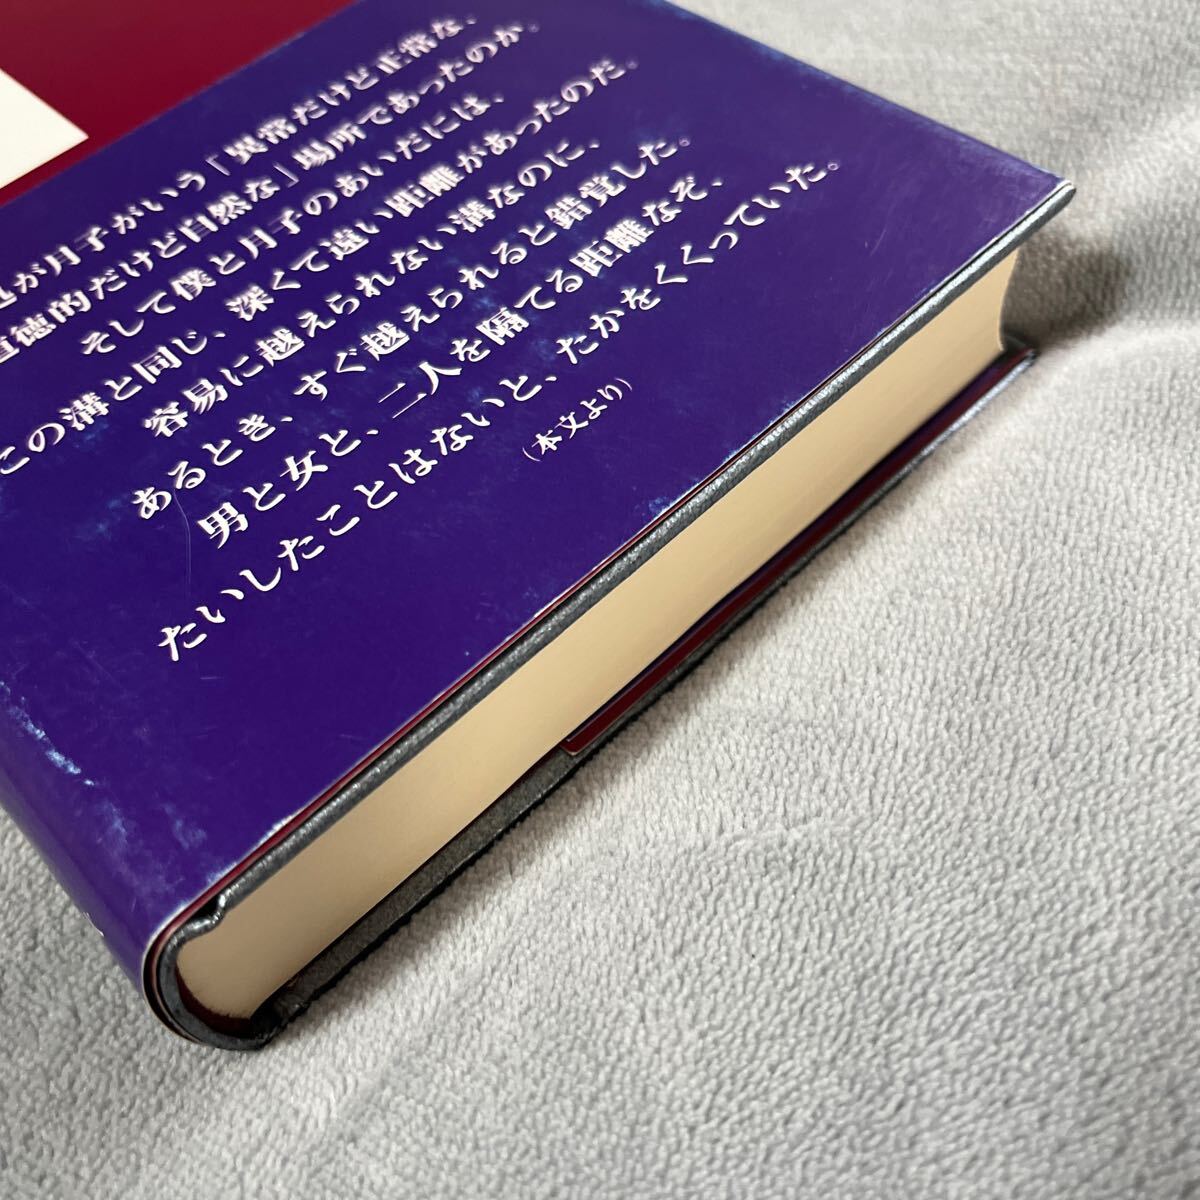 [ подпись книга@/../ первая версия ] Watanabe Jun'ichi [ автомобиль tou rouge ] Bungeishunju с поясом оби автограф книга